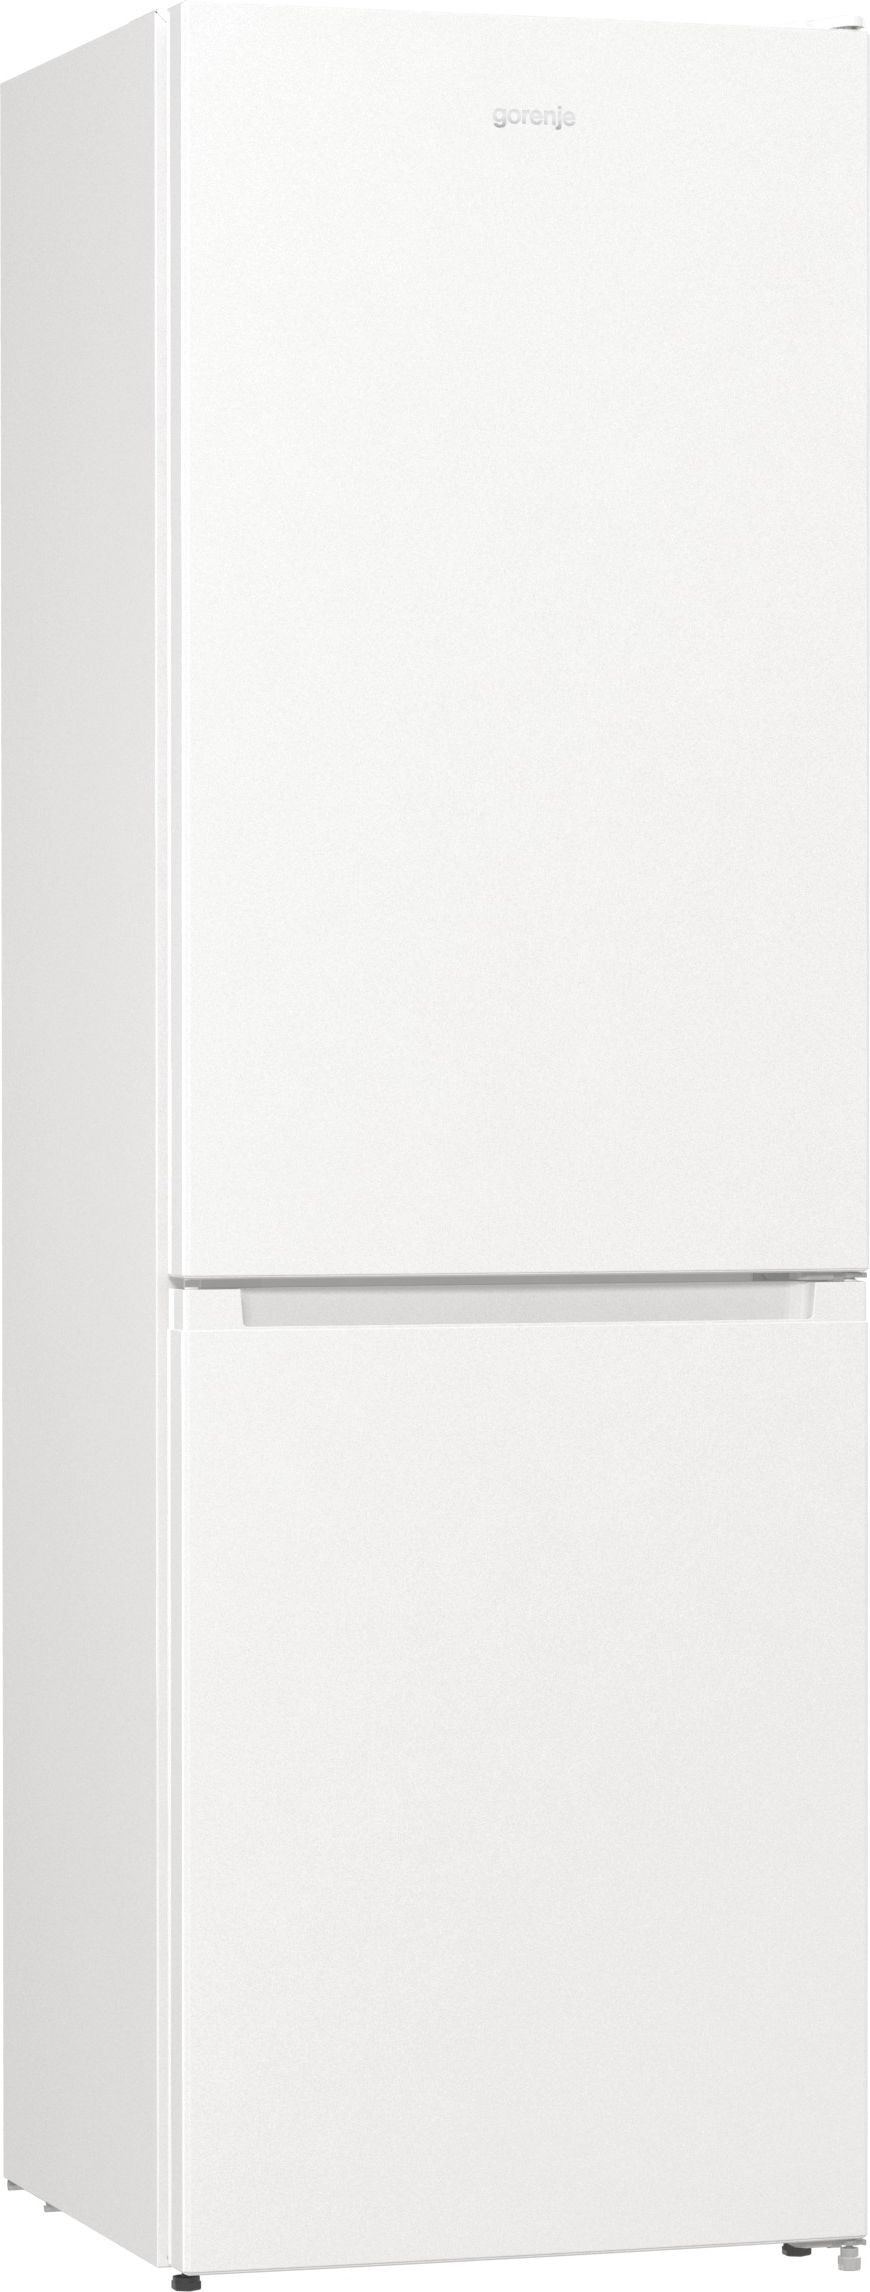 Холодильник Gorenje RK6192PW4 характеристики - фотография 7